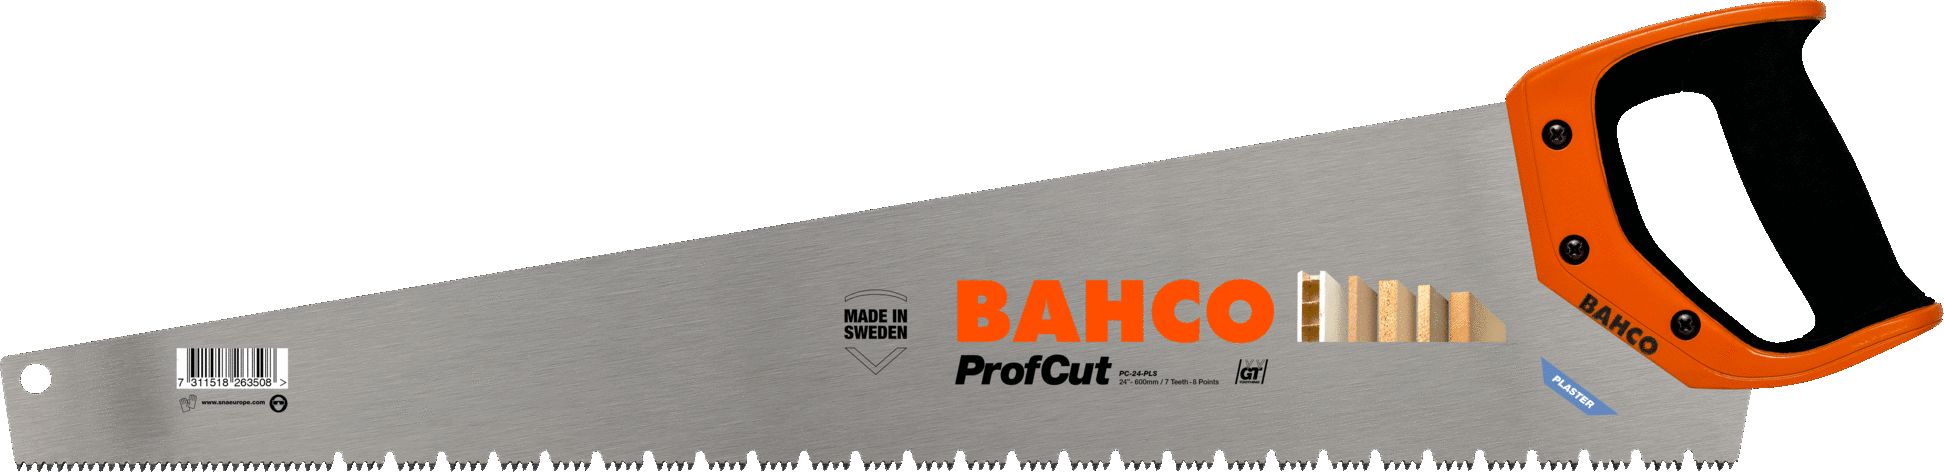 Bahco BAHCO PILA RECZNA DO KARTONGIPSU 600mm PROF CUT BAHPC-24-PLS